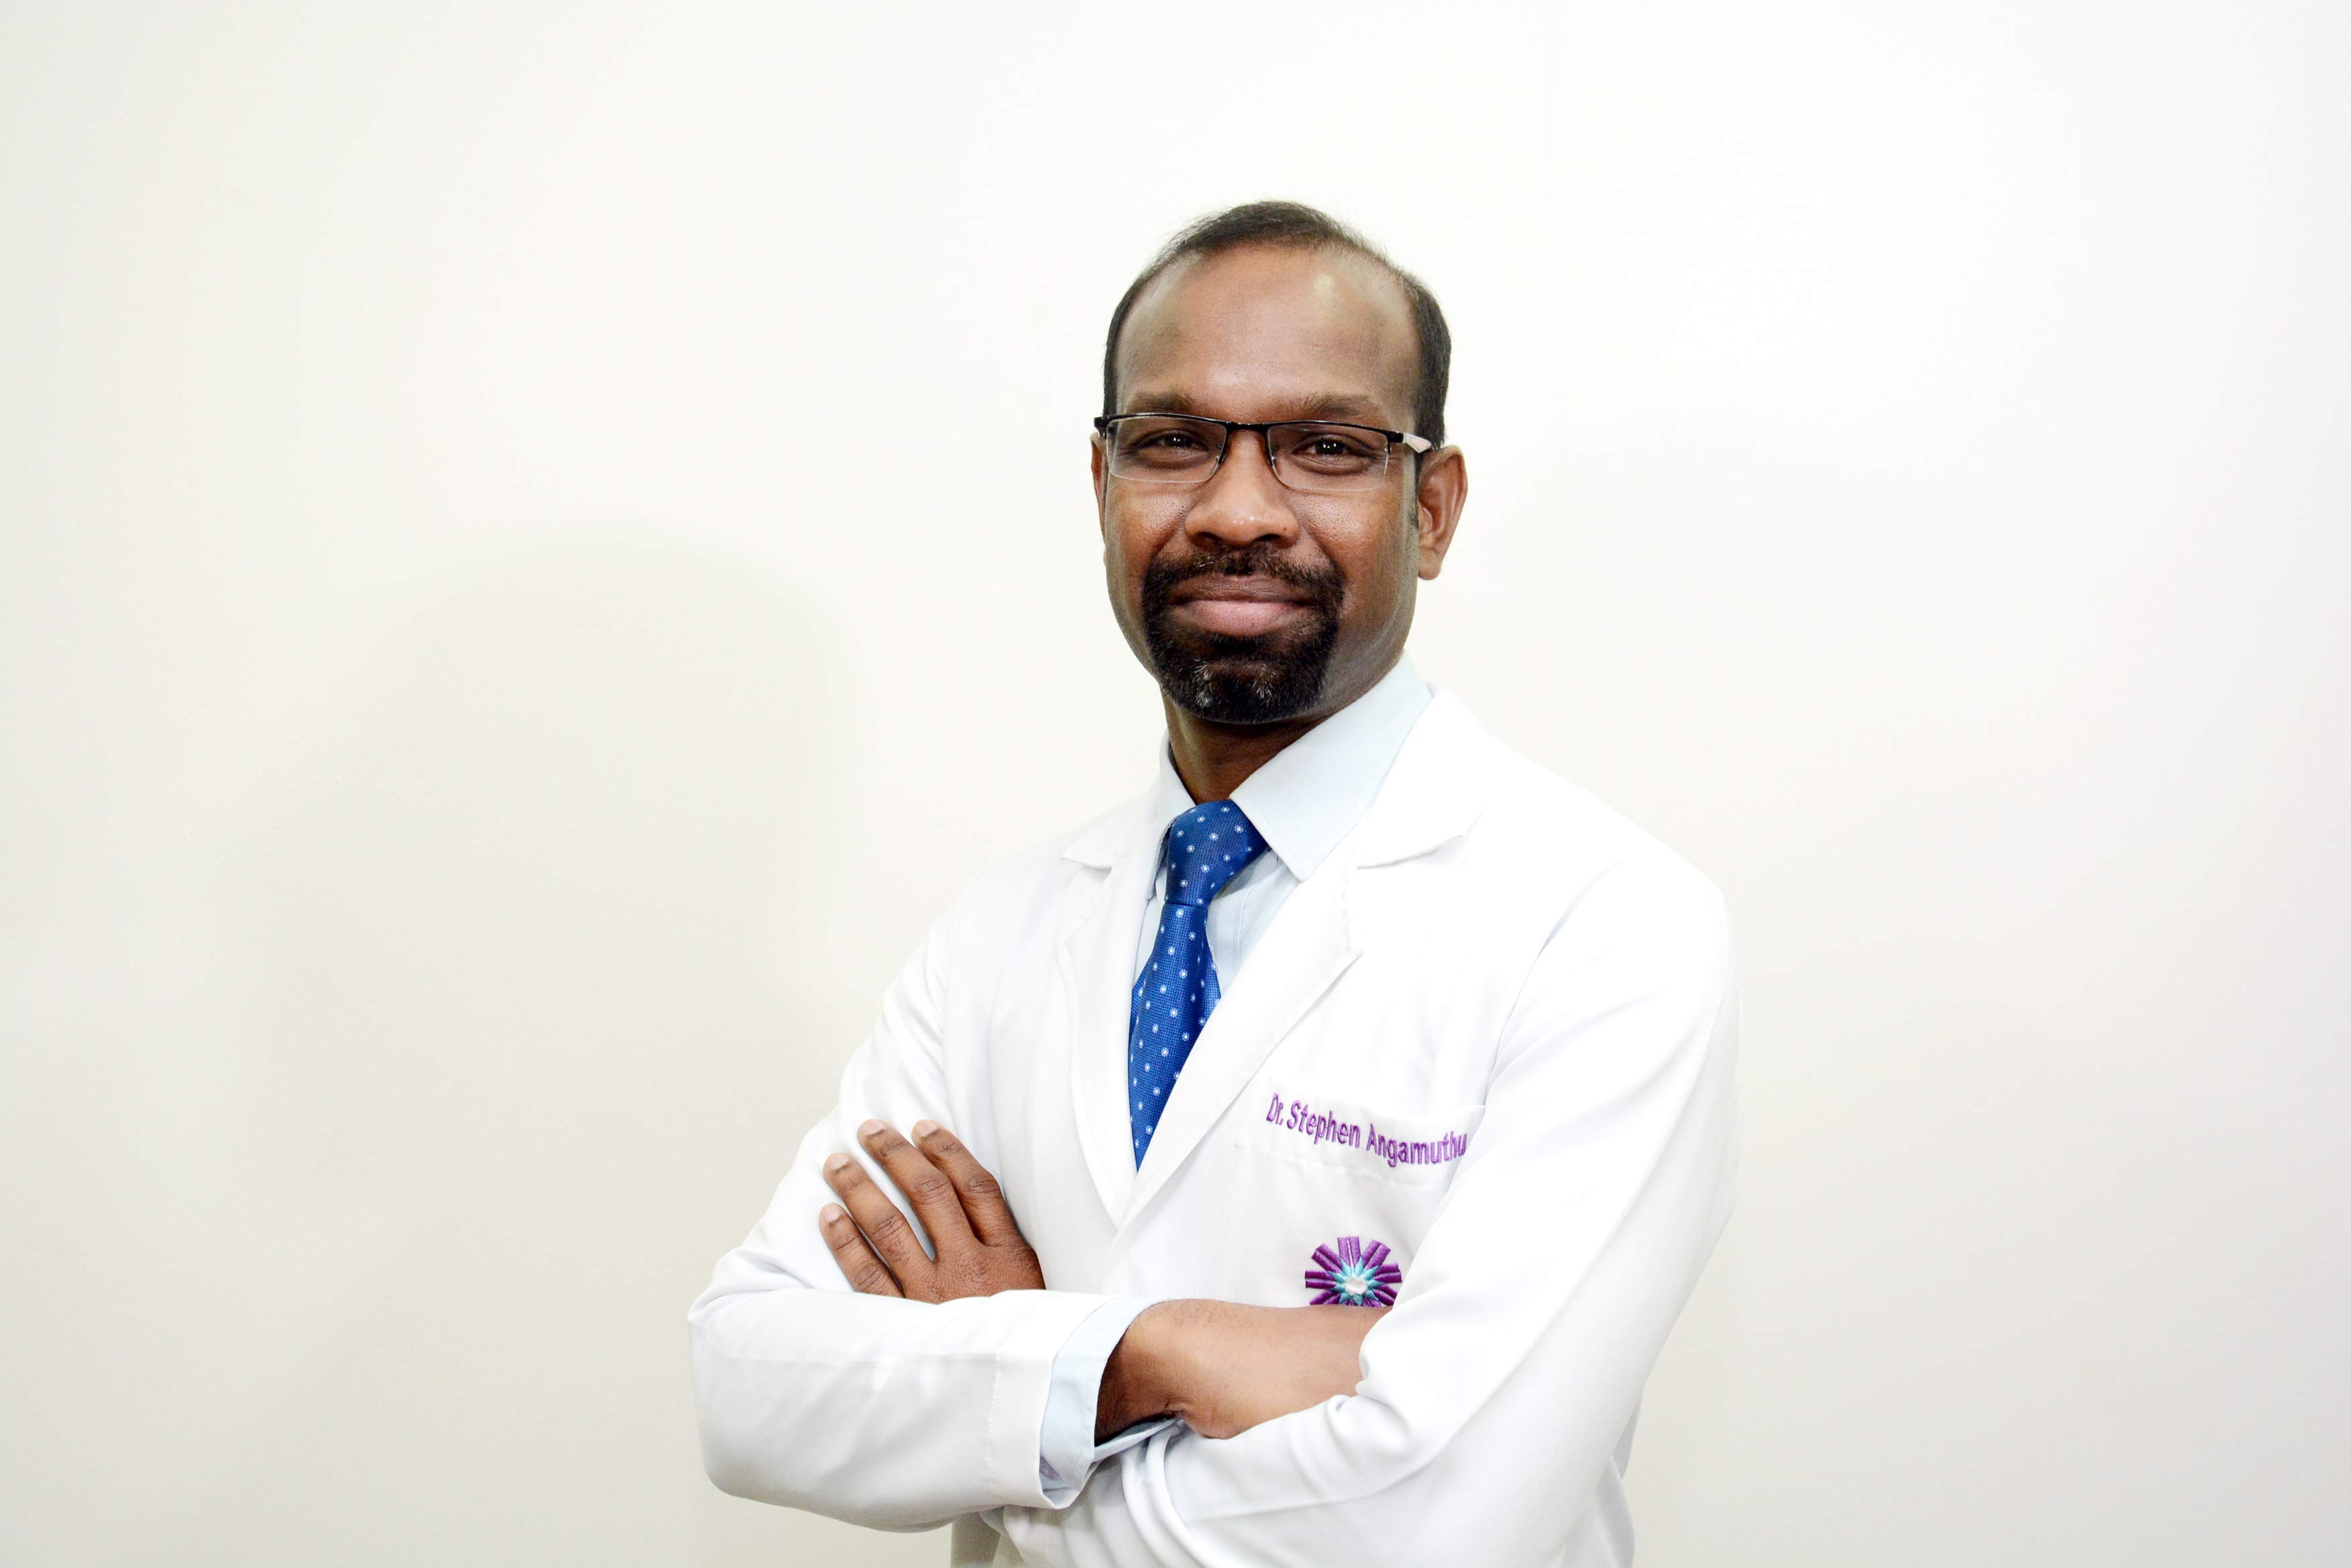 Dr. Stephen Angamuthu 1